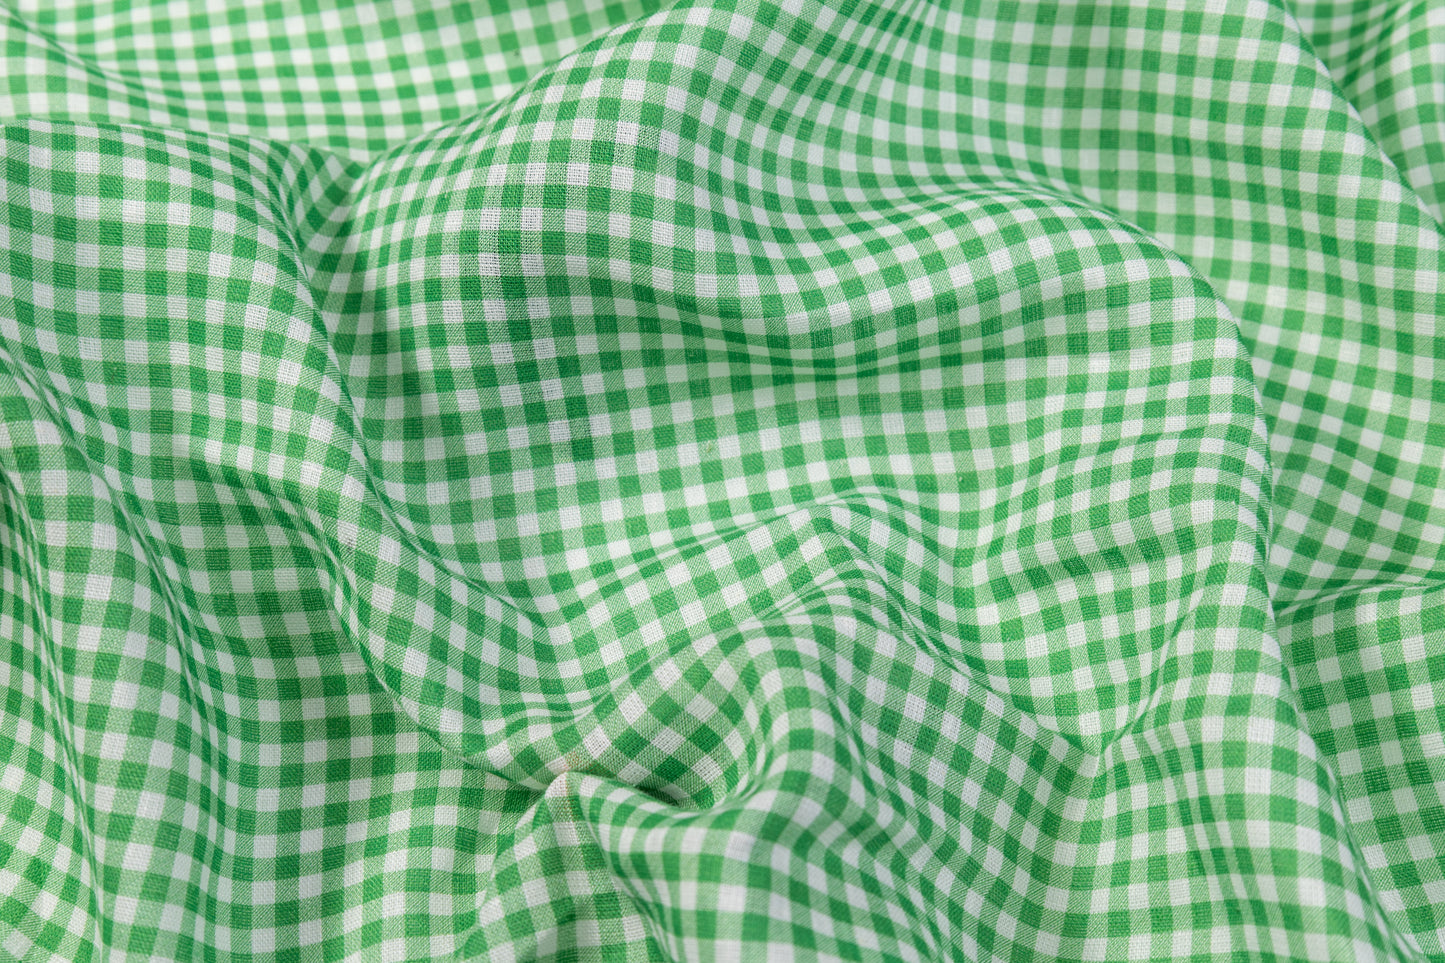 Gingham Check Italian Linen - Green